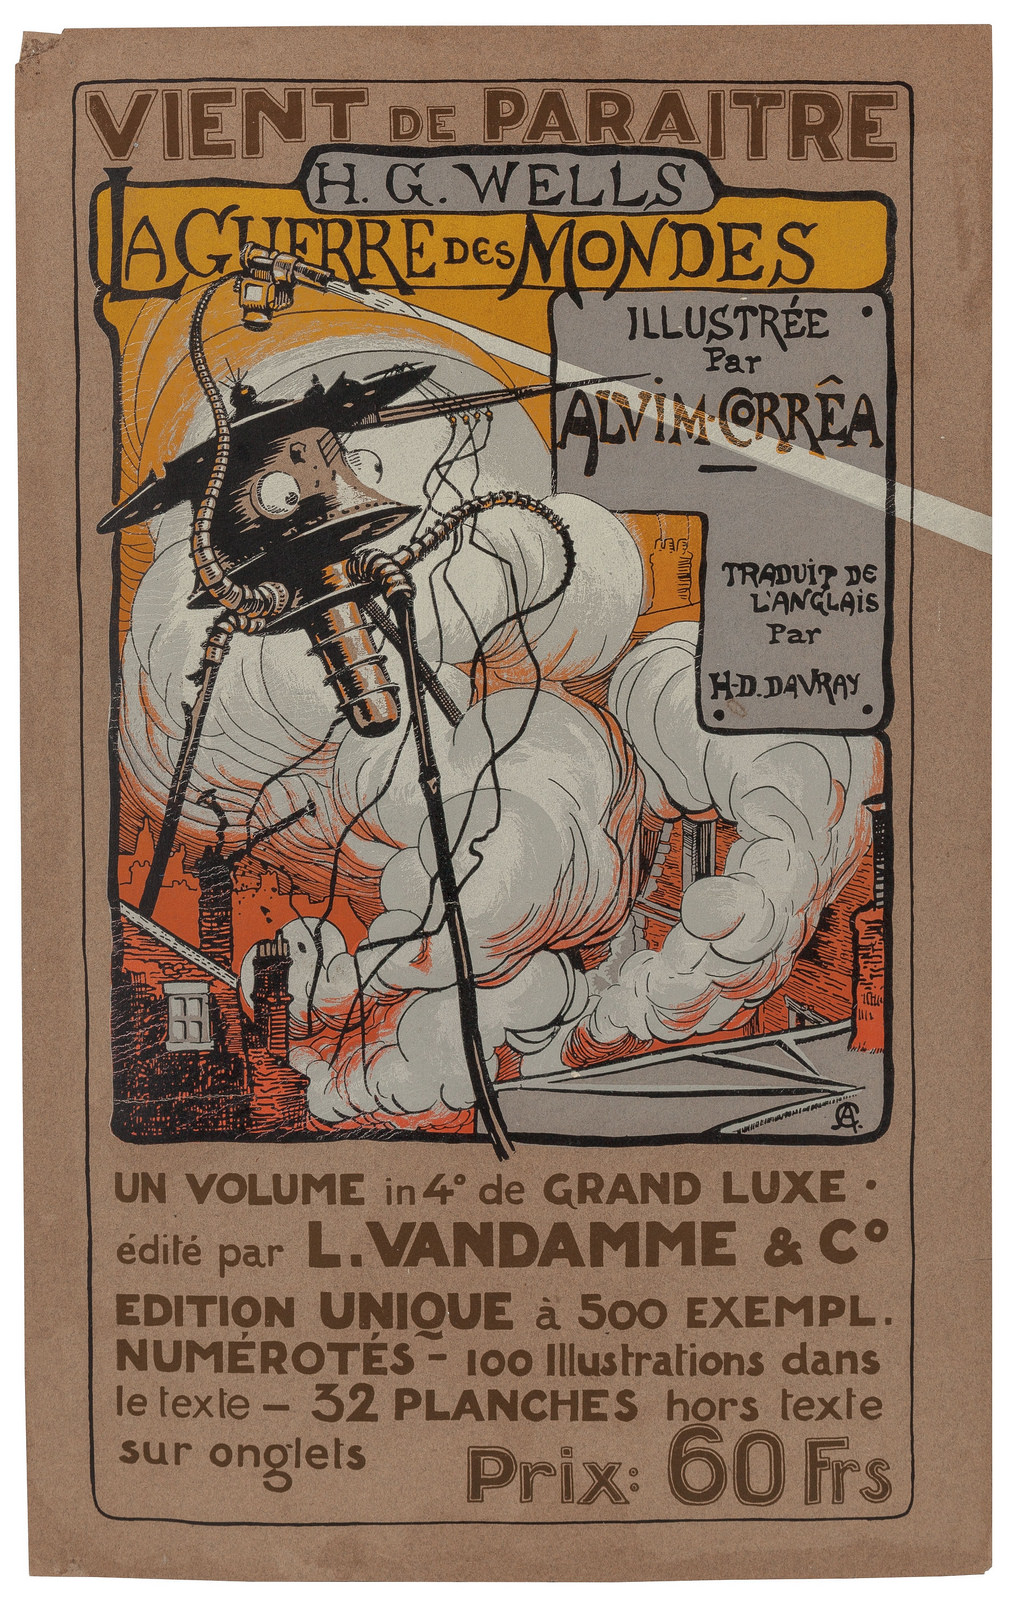 Les illustrations d’Alvim Corrêa pour La Guerre des Mondes en 1906